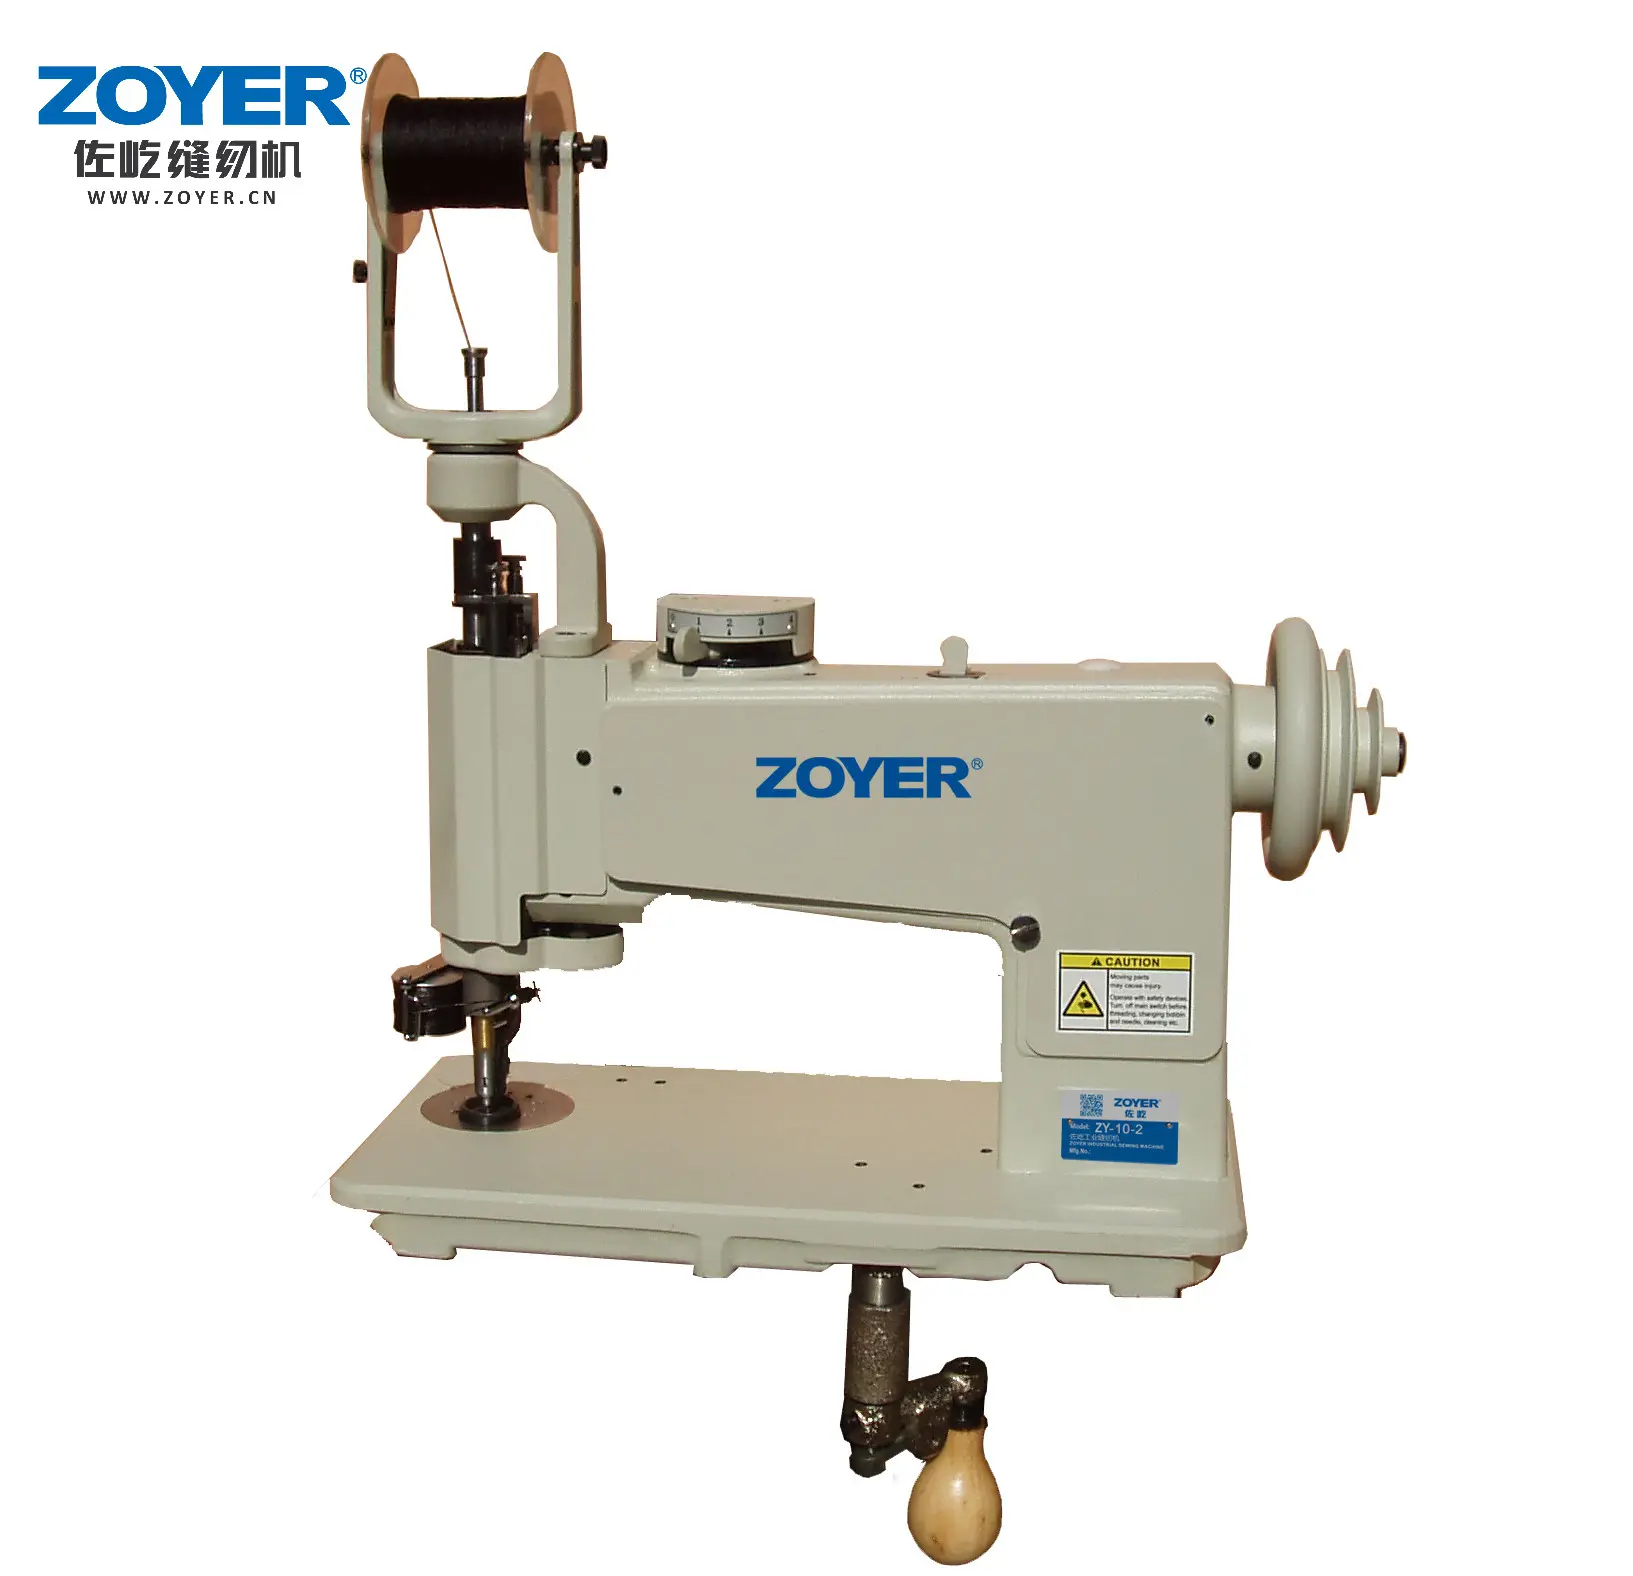 ZY150-1 портативная мини-вышивальная швейная машина плоская кровать цепная стежка PLC & механическая конфигурация простая в обращении